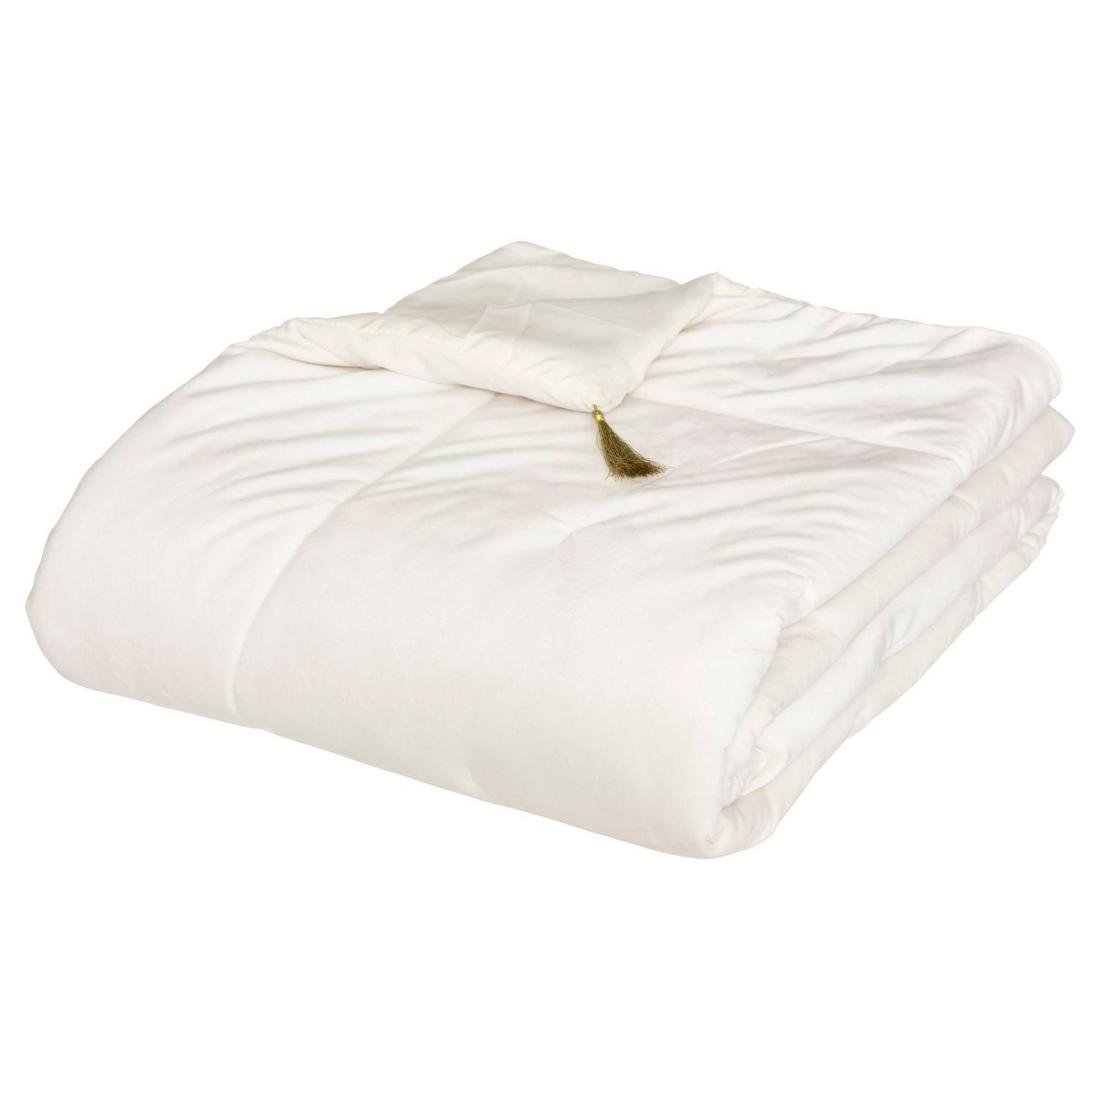 Bieżnik na łóżko SONIA welwetowy biały 80 x 180 cm 164071A